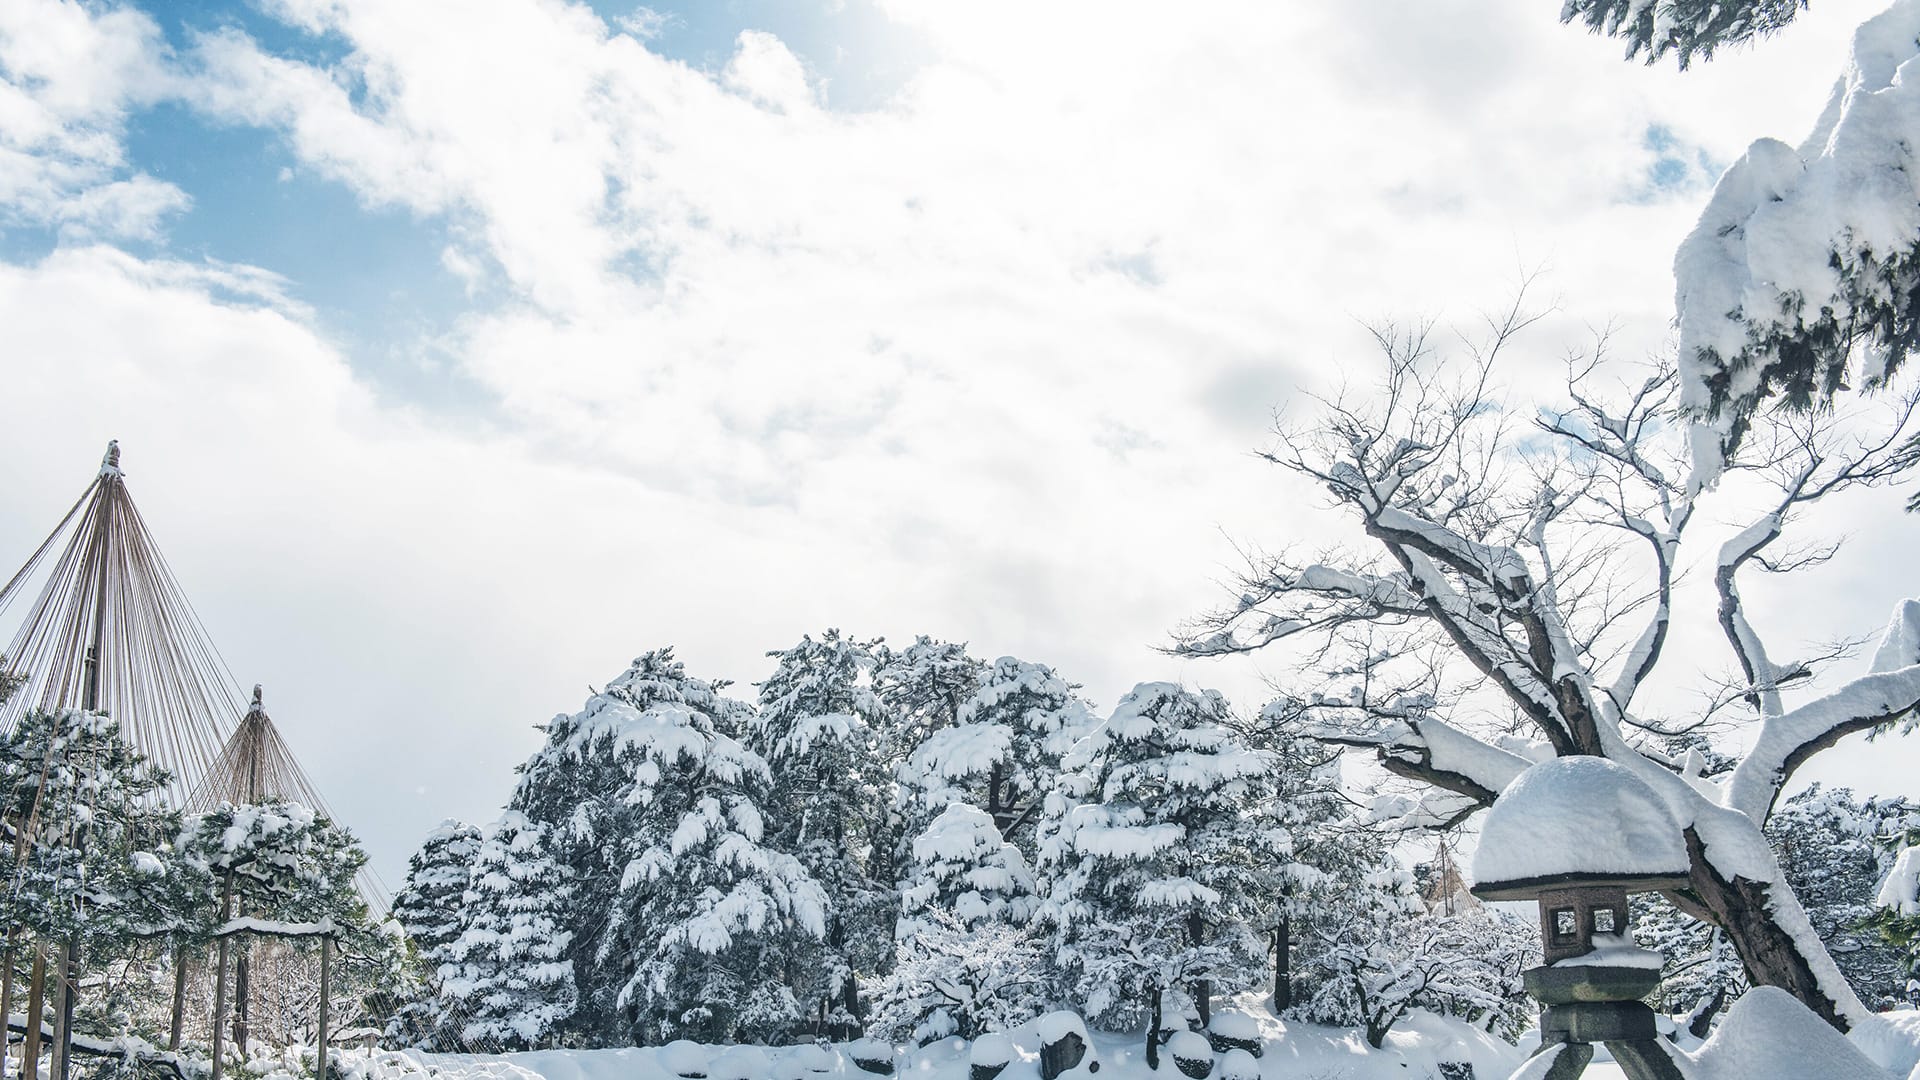 金沢に拠点を置く株式会社K-ブランドオフのコーポレートサイト。兼六園の雪景色の写真